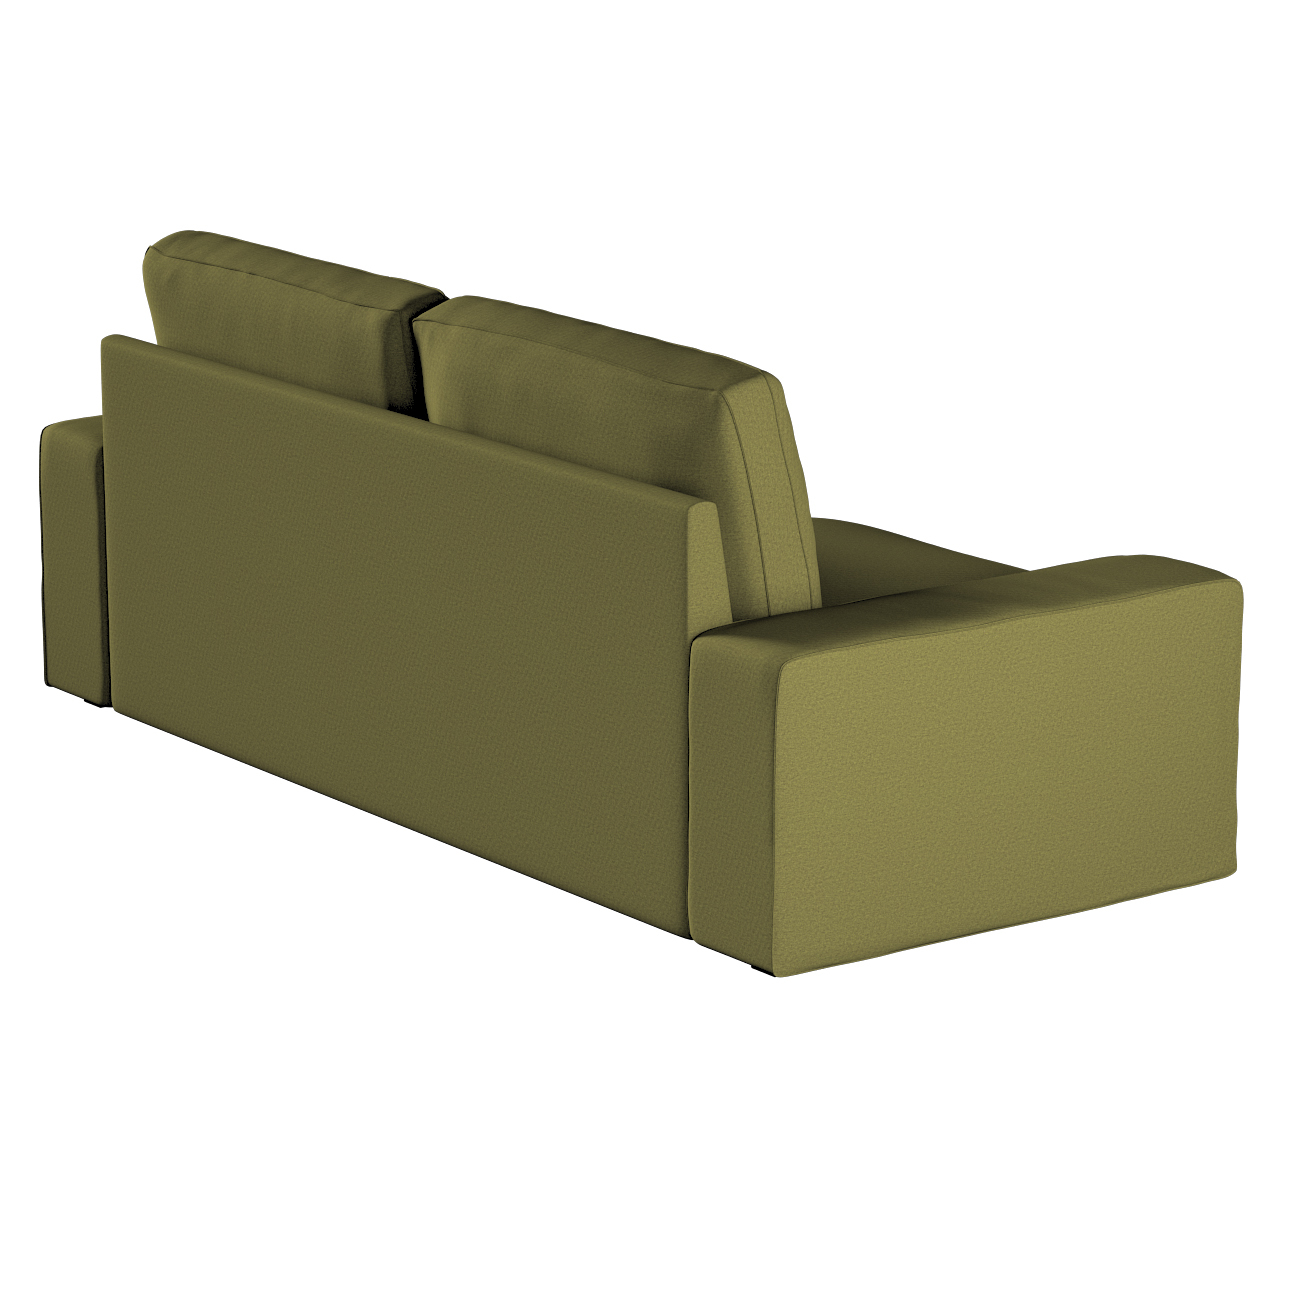 Bezug für Kivik 3-Sitzer Sofa, olivgrün, Bezug für Sofa Kivik 3-Sitzer, Etn günstig online kaufen